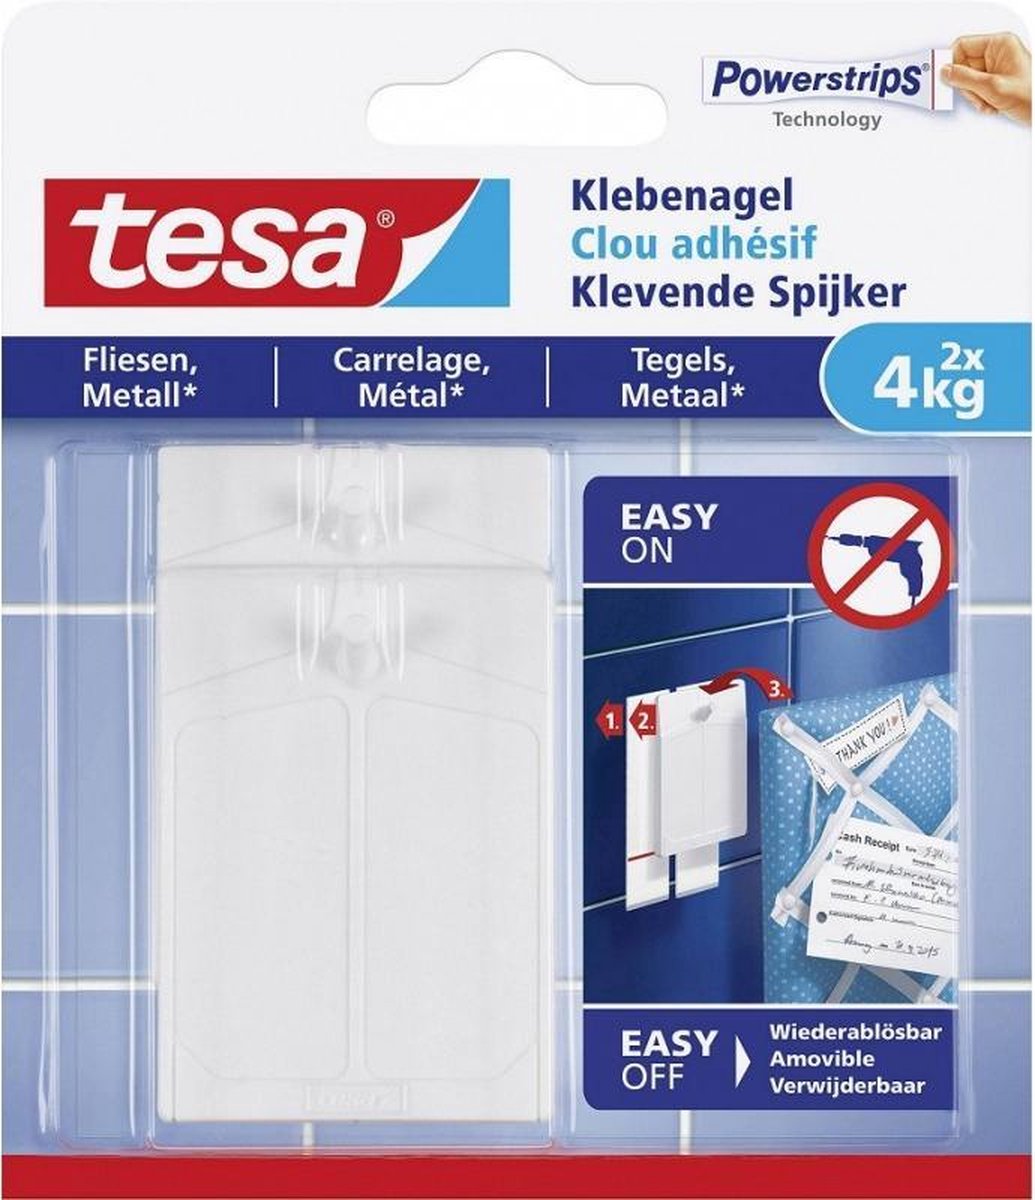 Tesa Klevende Spijker Voor Metaal En Tegels 2x 4kg 77766 - Wit